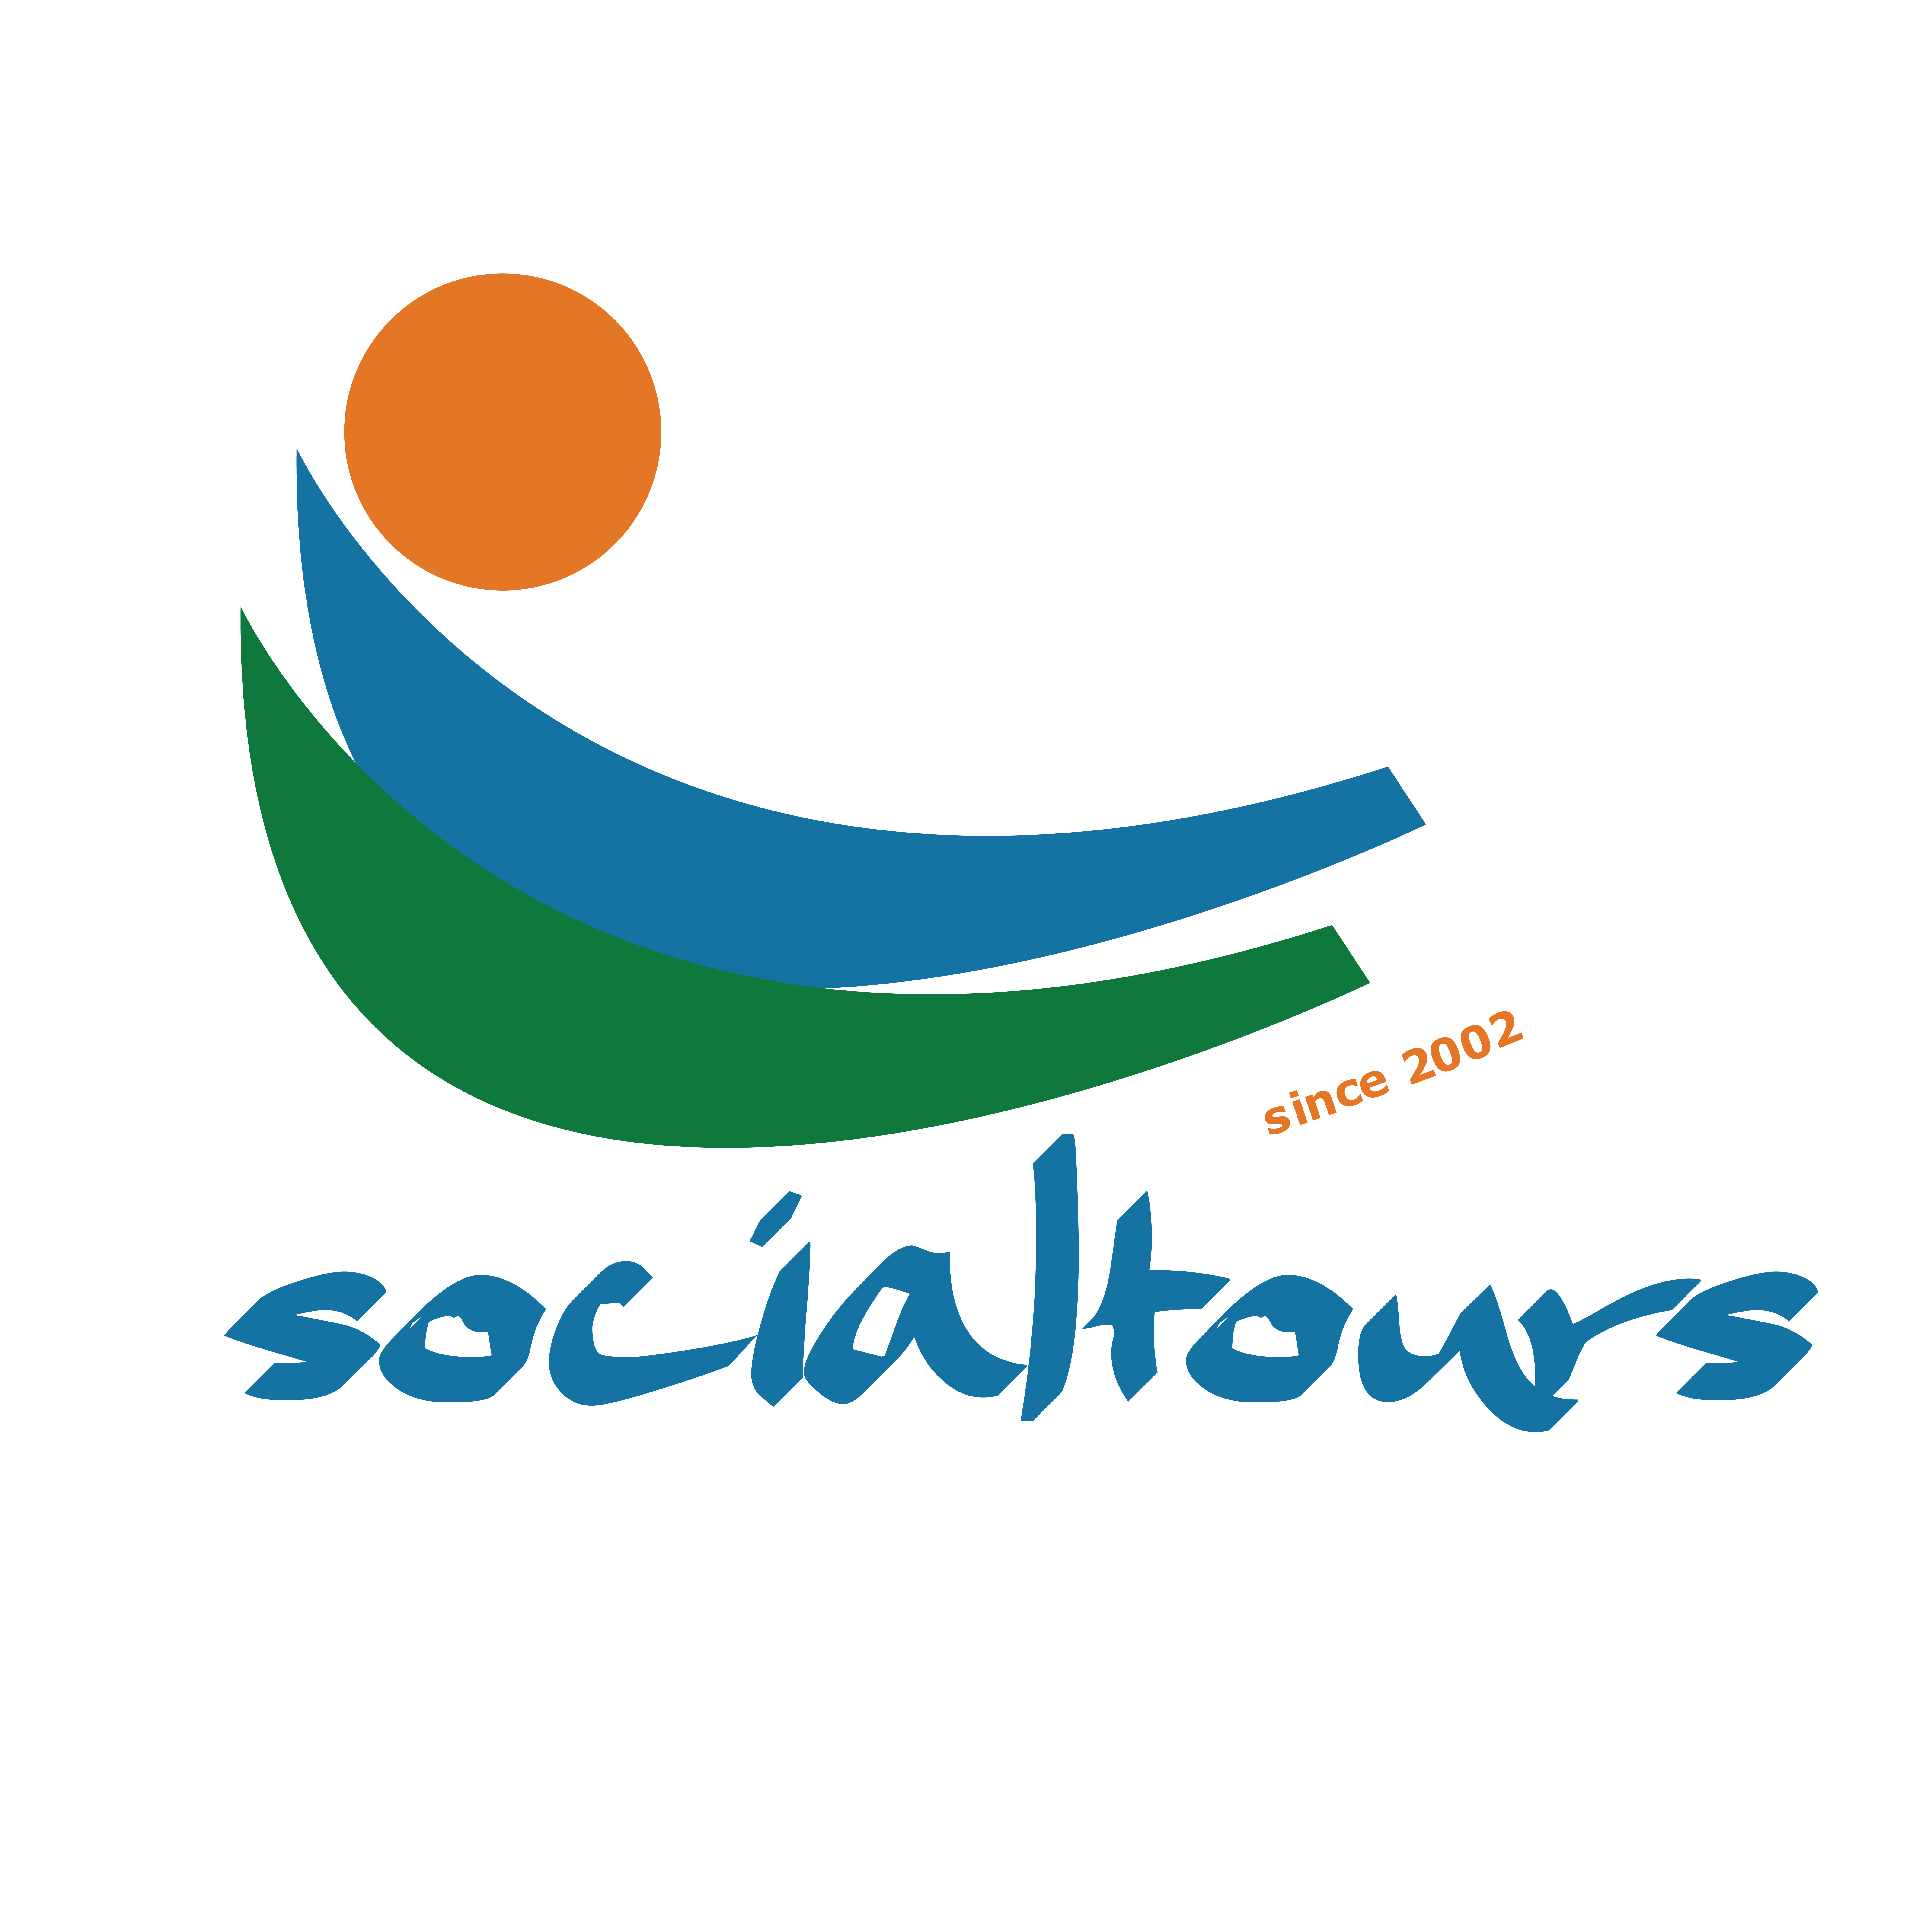 socialtours logo